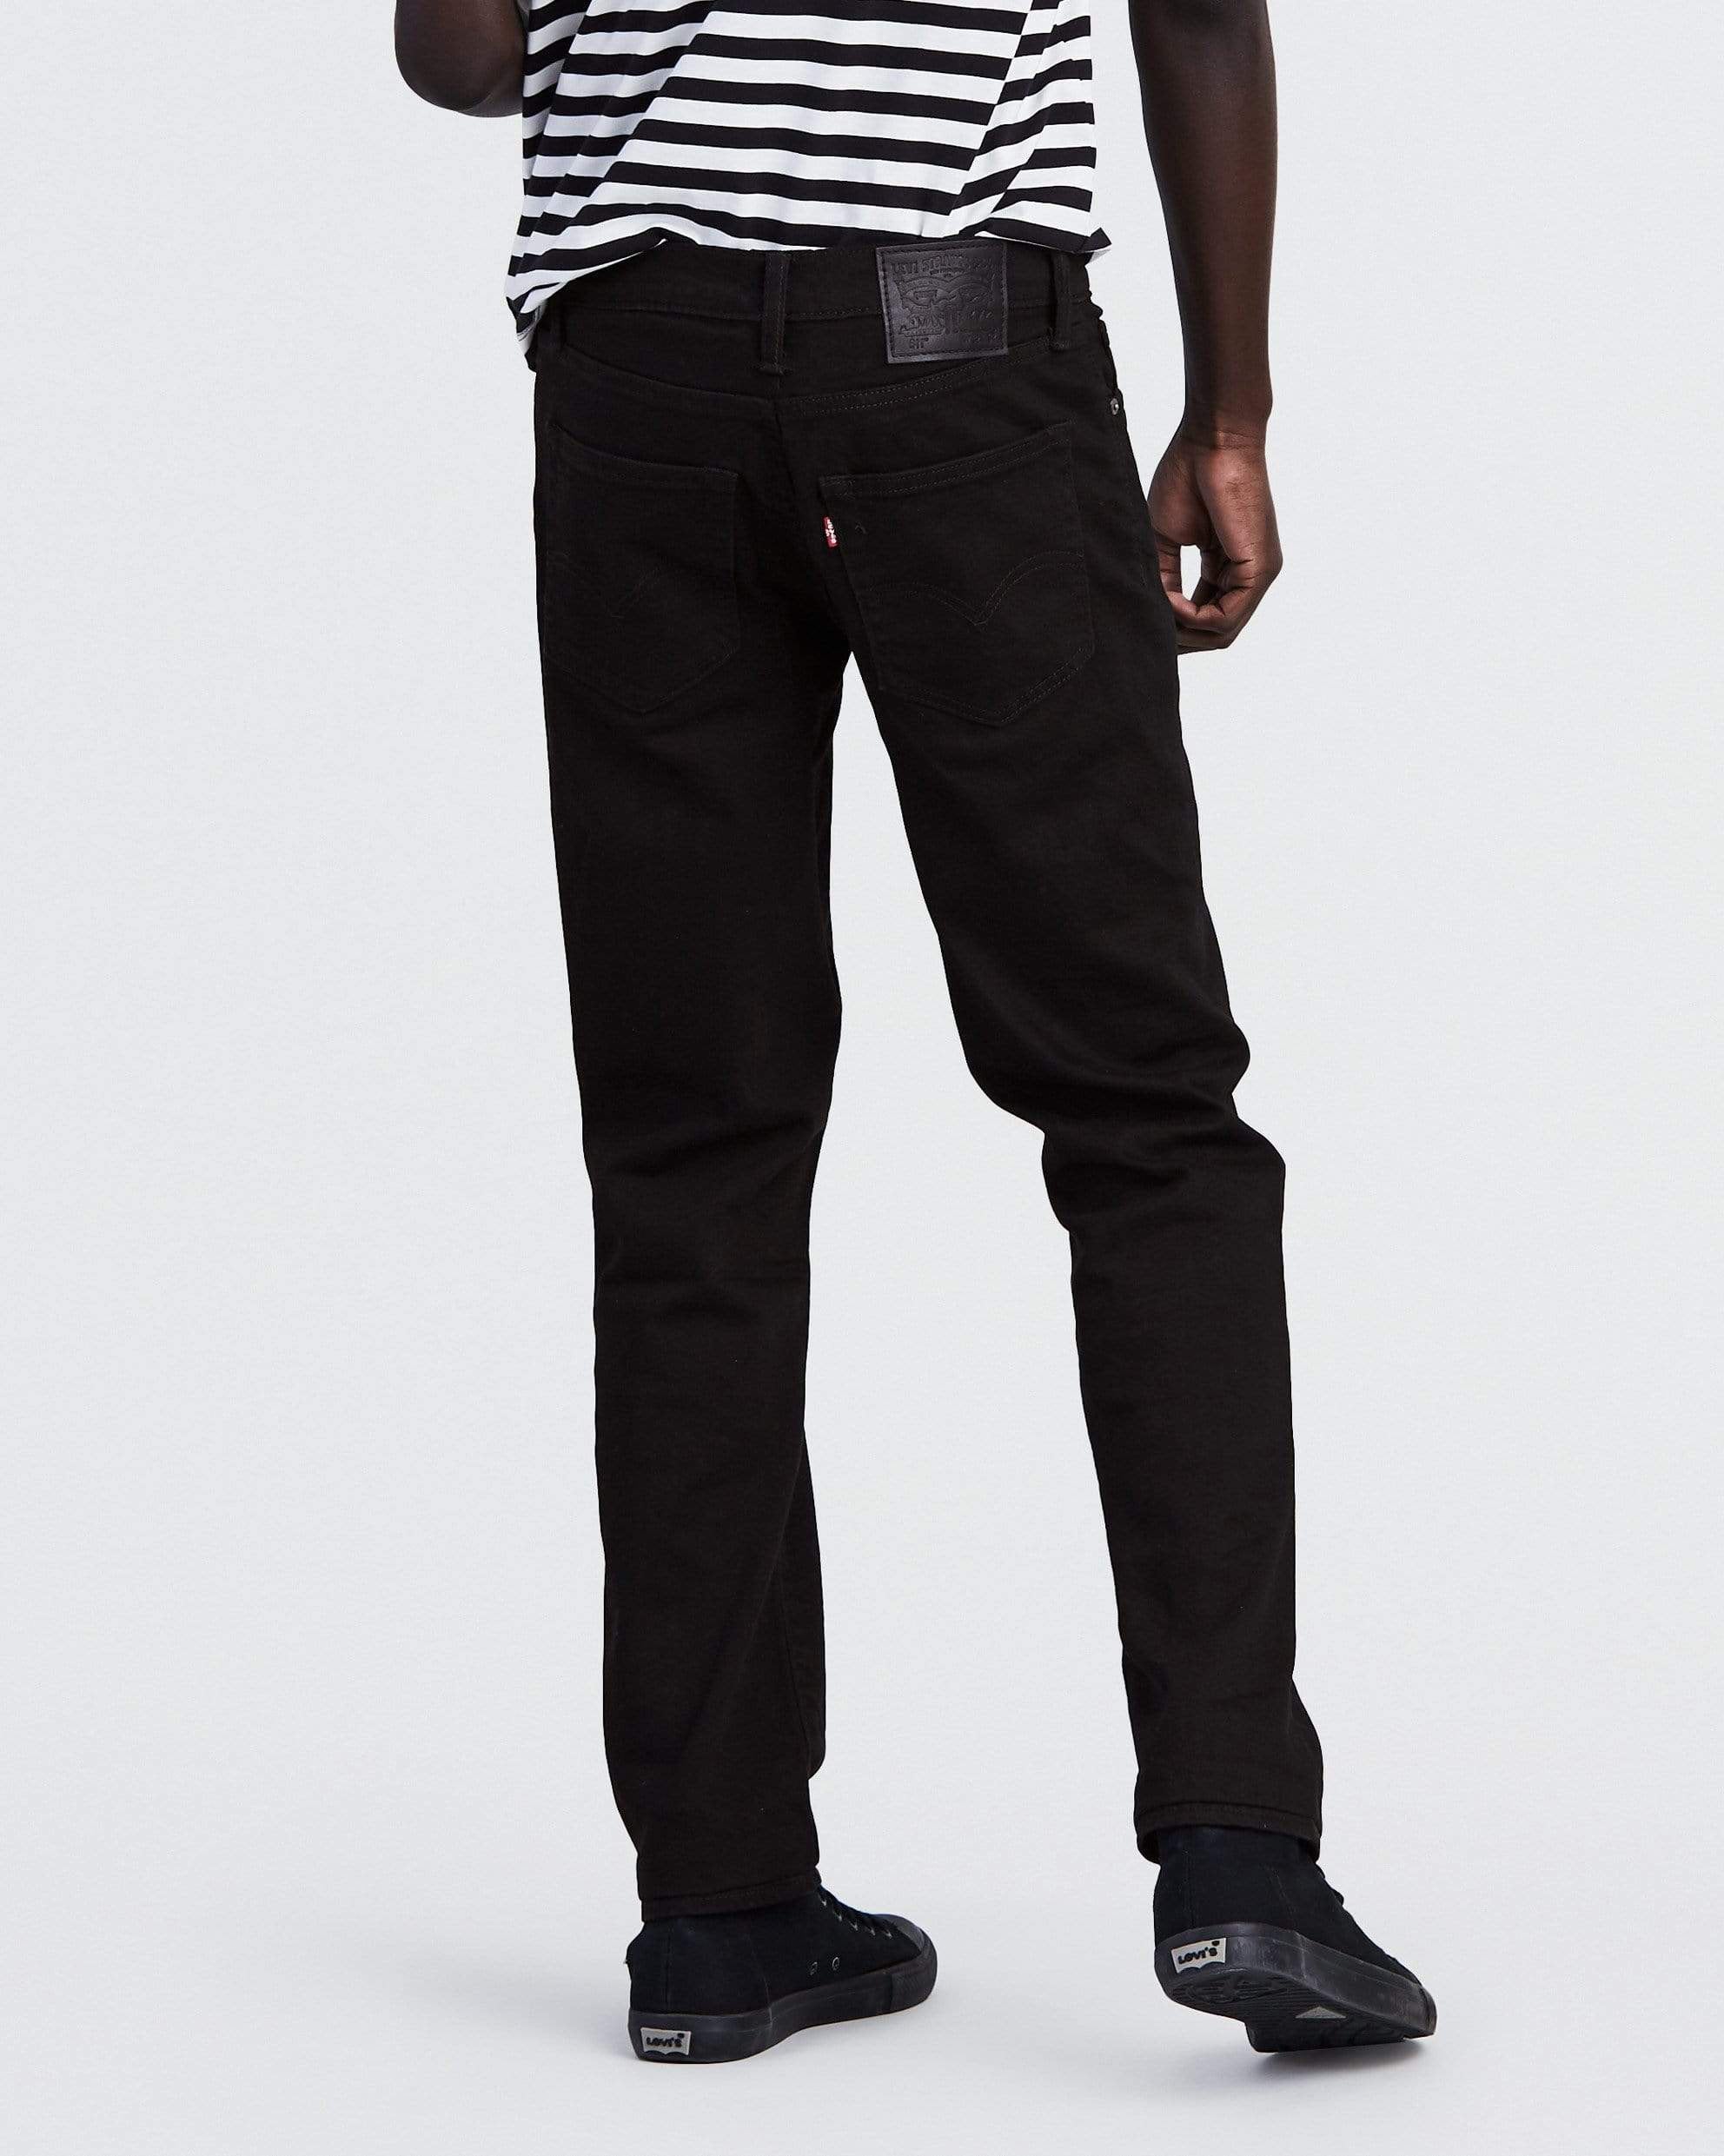 stuk Kelder Kleverig Levis 511 Slim Fit Mens Jeans - Nightshine Black - Jeans and Street Fashion  from Jeanstore